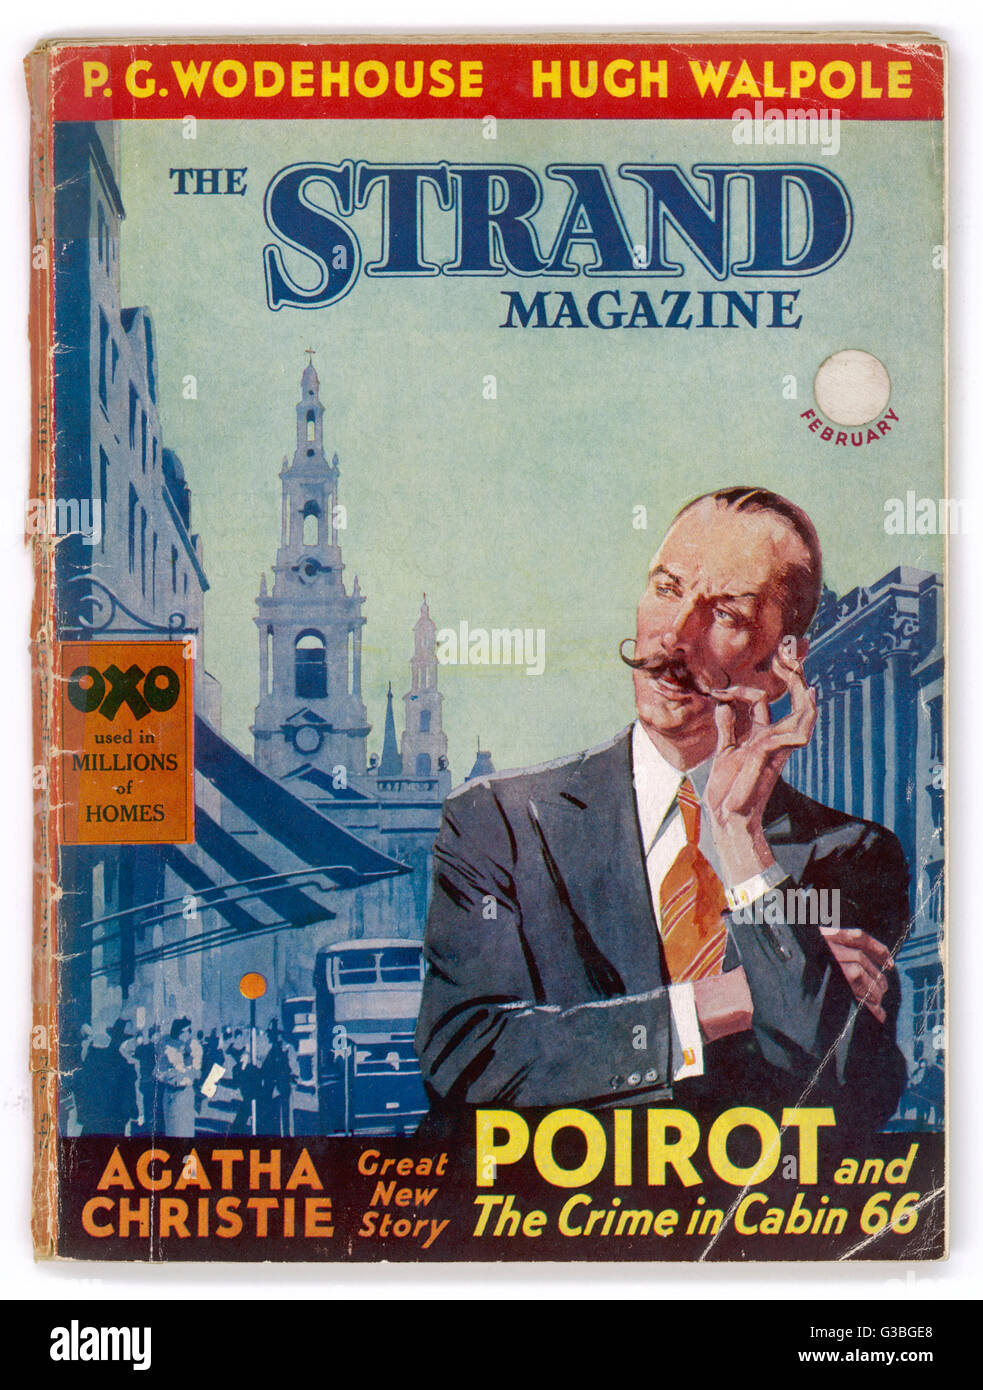 Le détective belge Hercule Poirot, sur la couverture du Strand magazine contenant l'histoire de Christie Le crime en cabine 66 Date : 1936 Banque D'Images